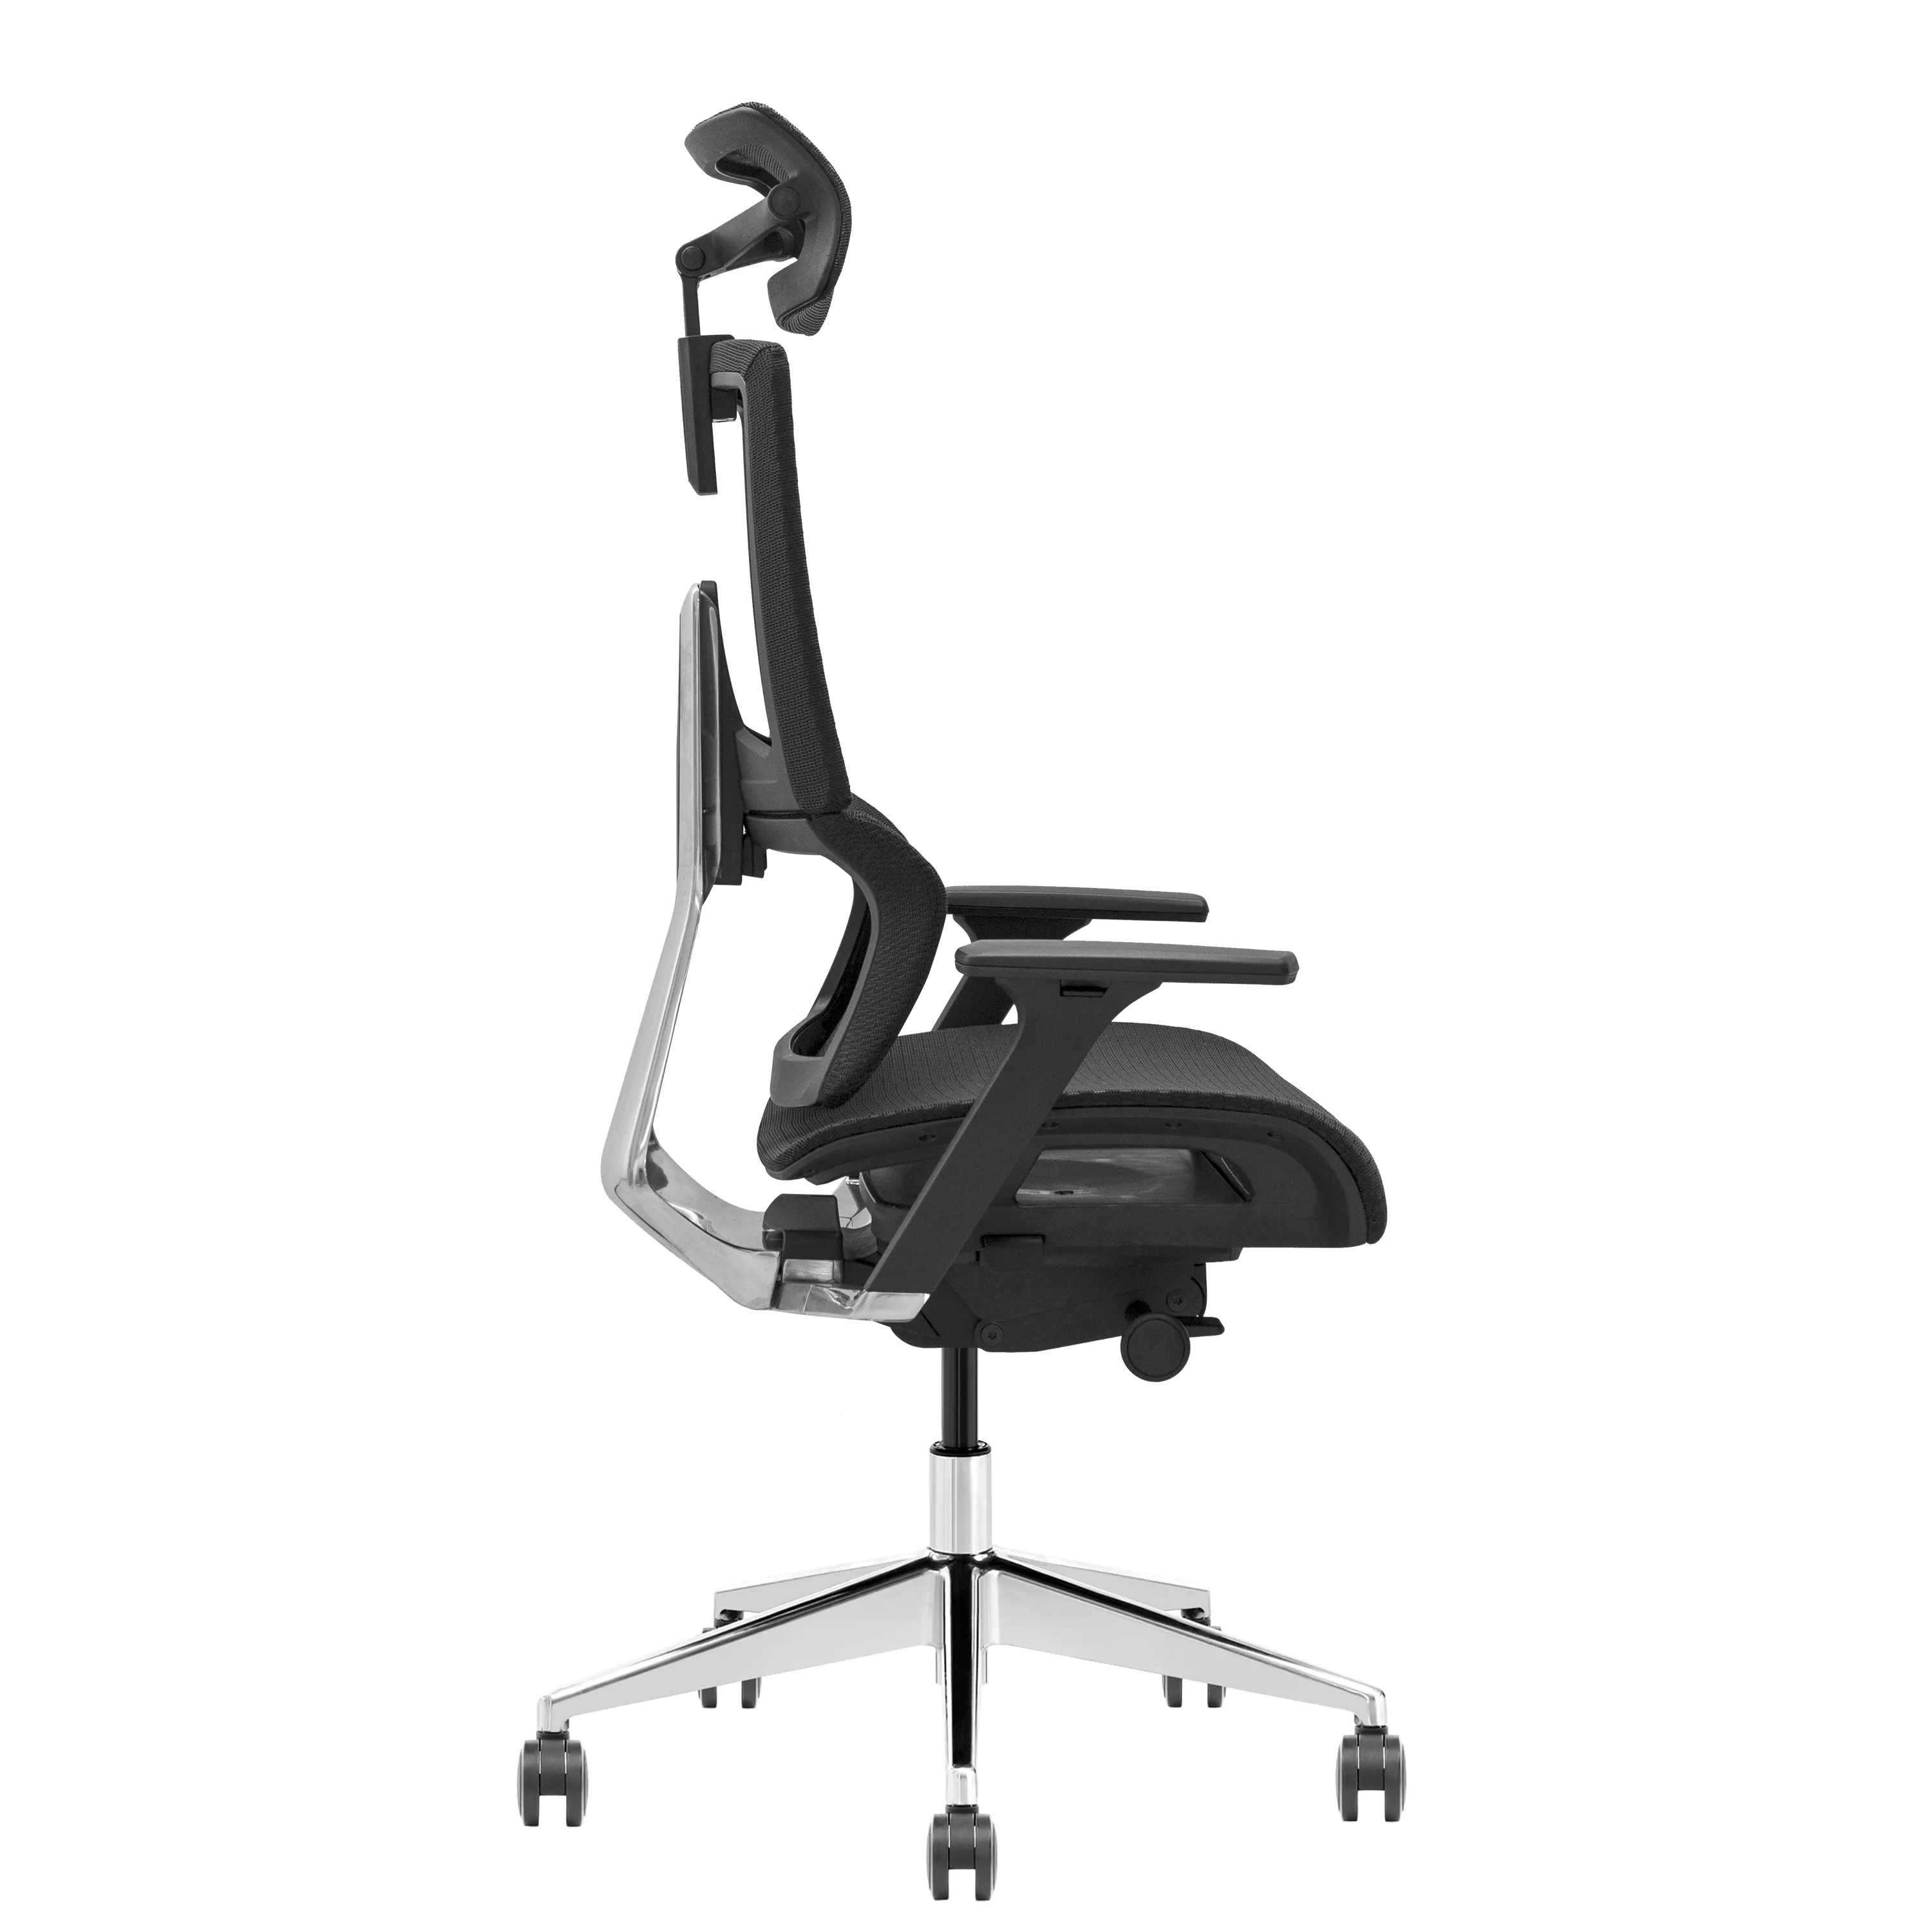 Prim iş yürütme ofis kanepesi sandalye büyük boy lomber ergonomik tasarım çağdaş tarzı ile 20 $ için naylondan yapılmış